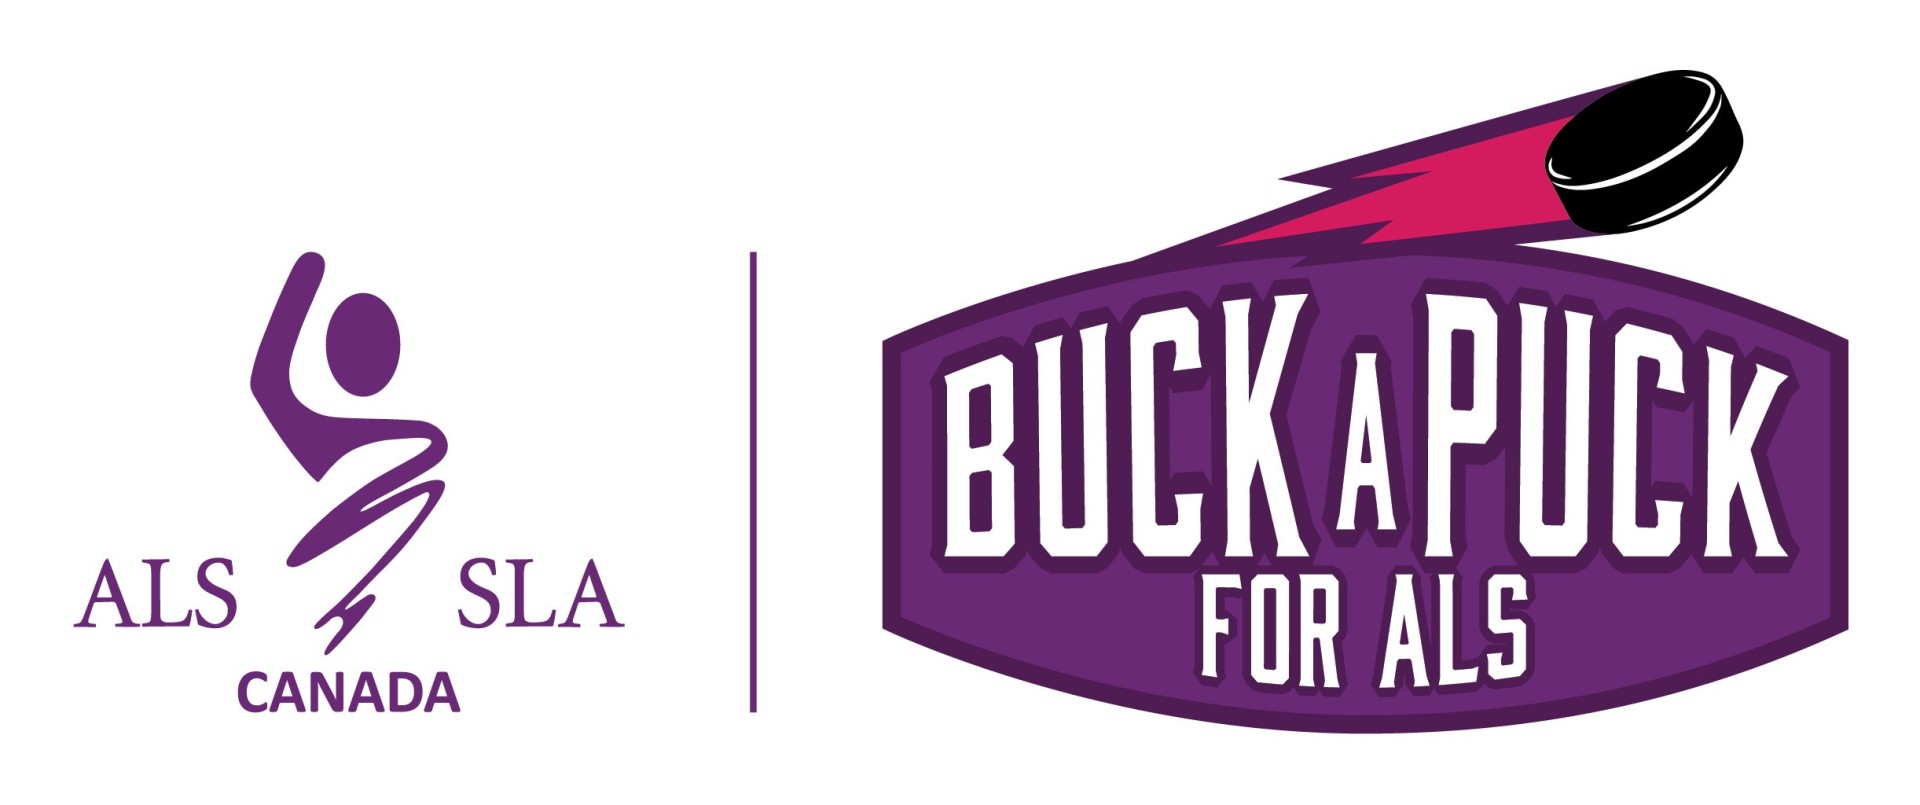 ALS Canada Buck-A-Puck for ALS